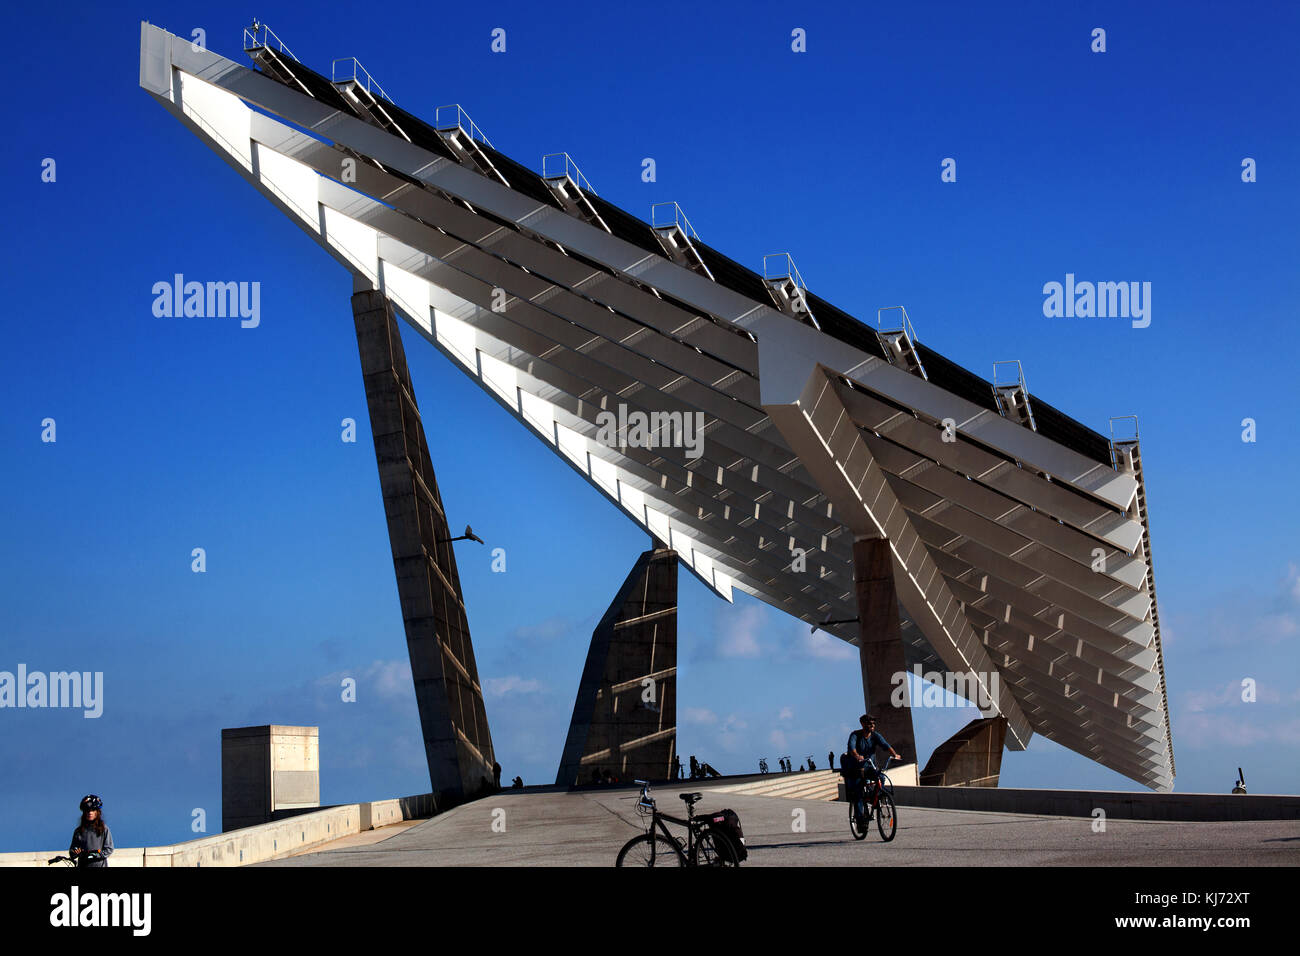 Centrale photovoltaïque Forum, Barcelone, Espagne. Banque D'Images